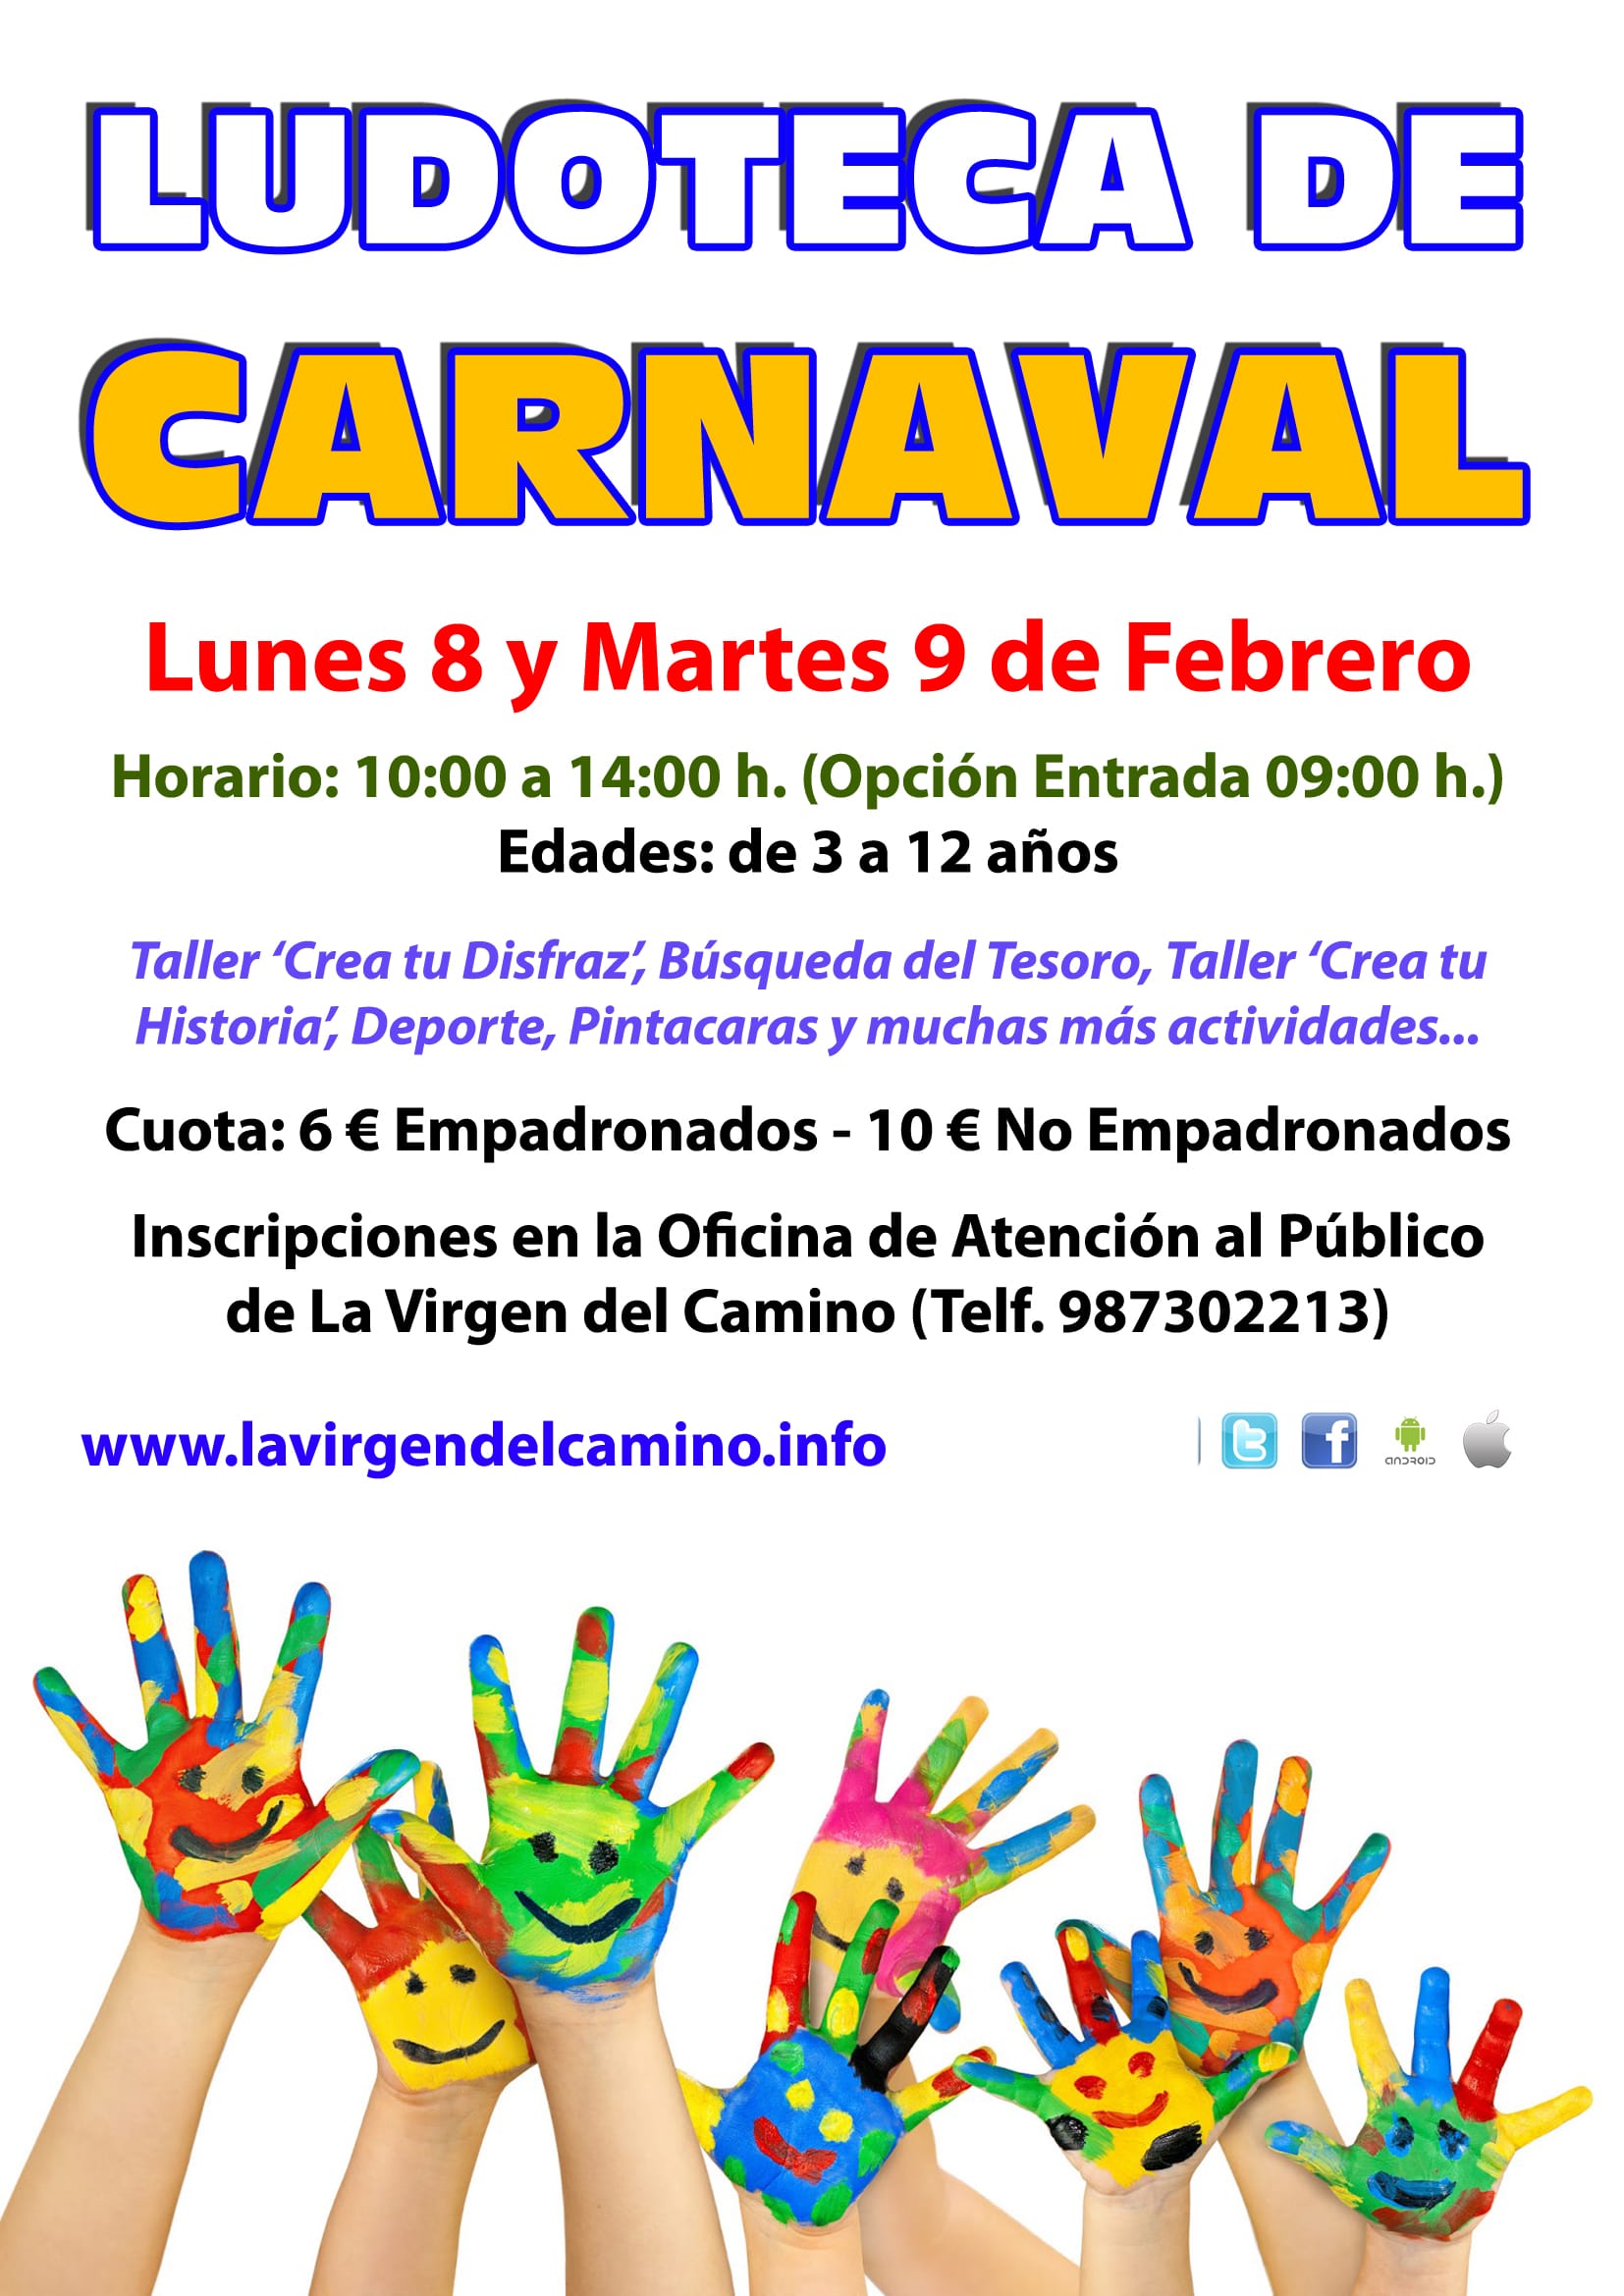 Ludotecas Carnaval